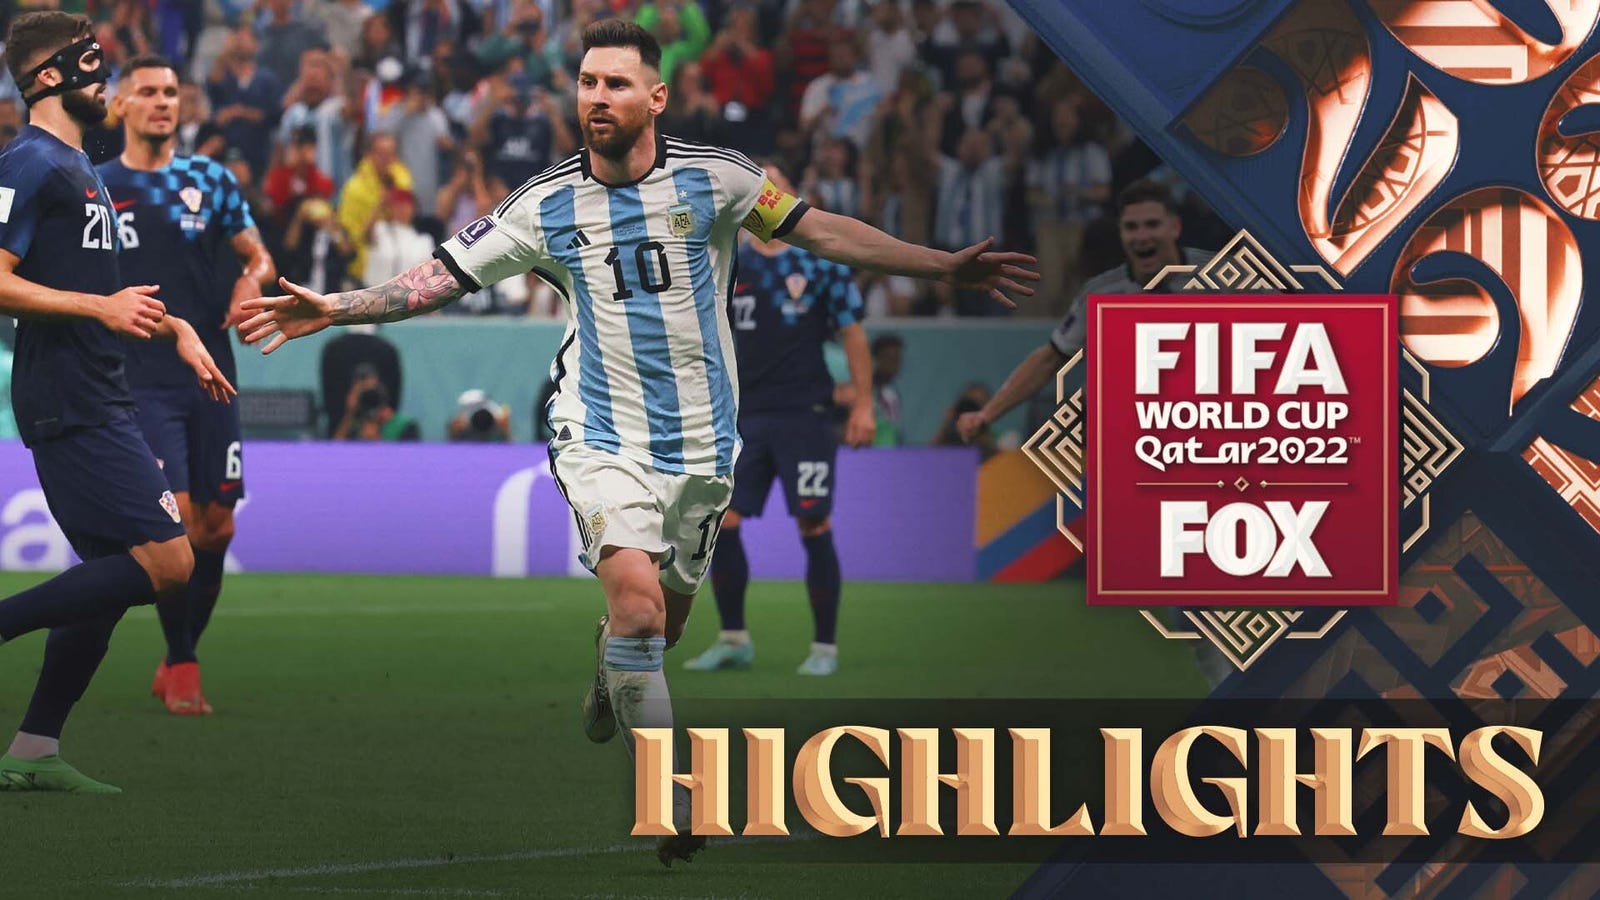 Argentina vs Croatia highlights